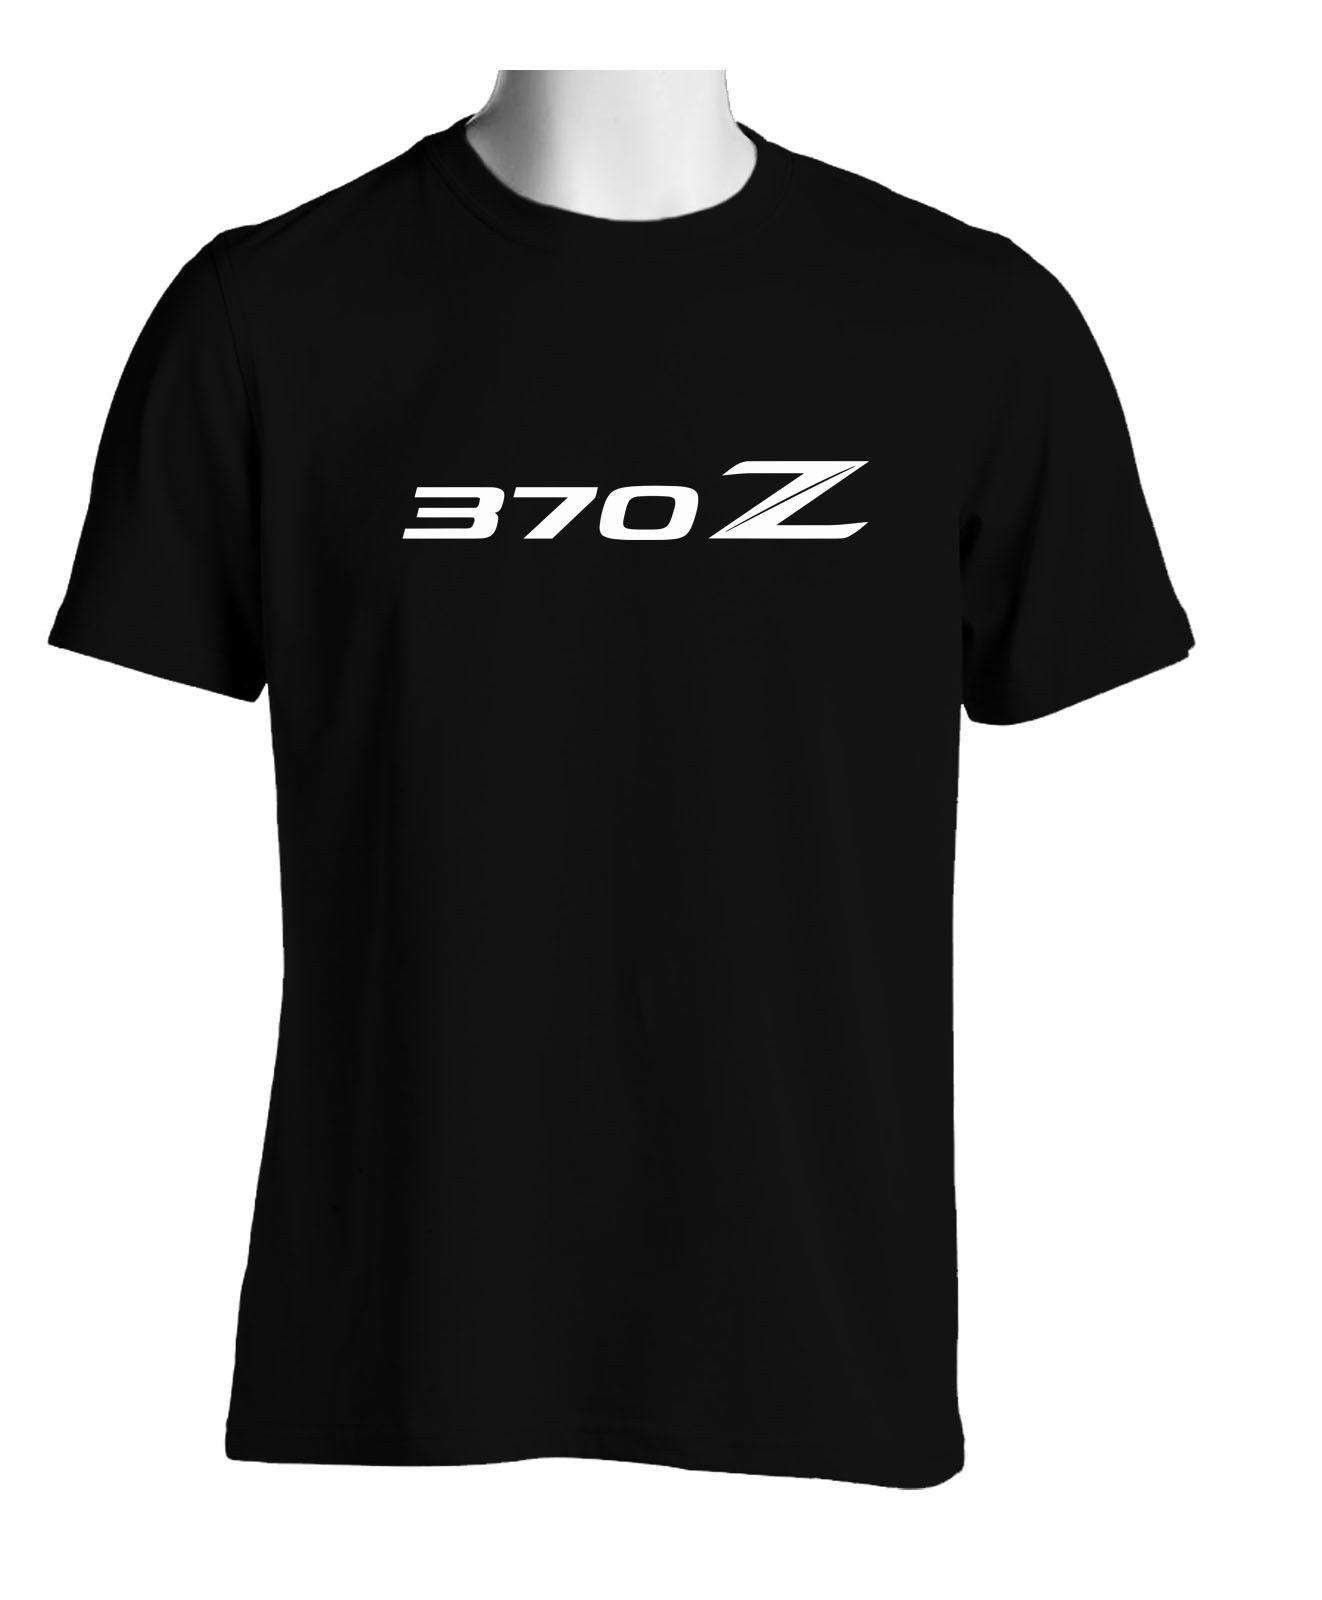 370Z Logo - Black T Shirts Nissan 370z Logo Men'S Size S To 3XL Funny Slogan T ...